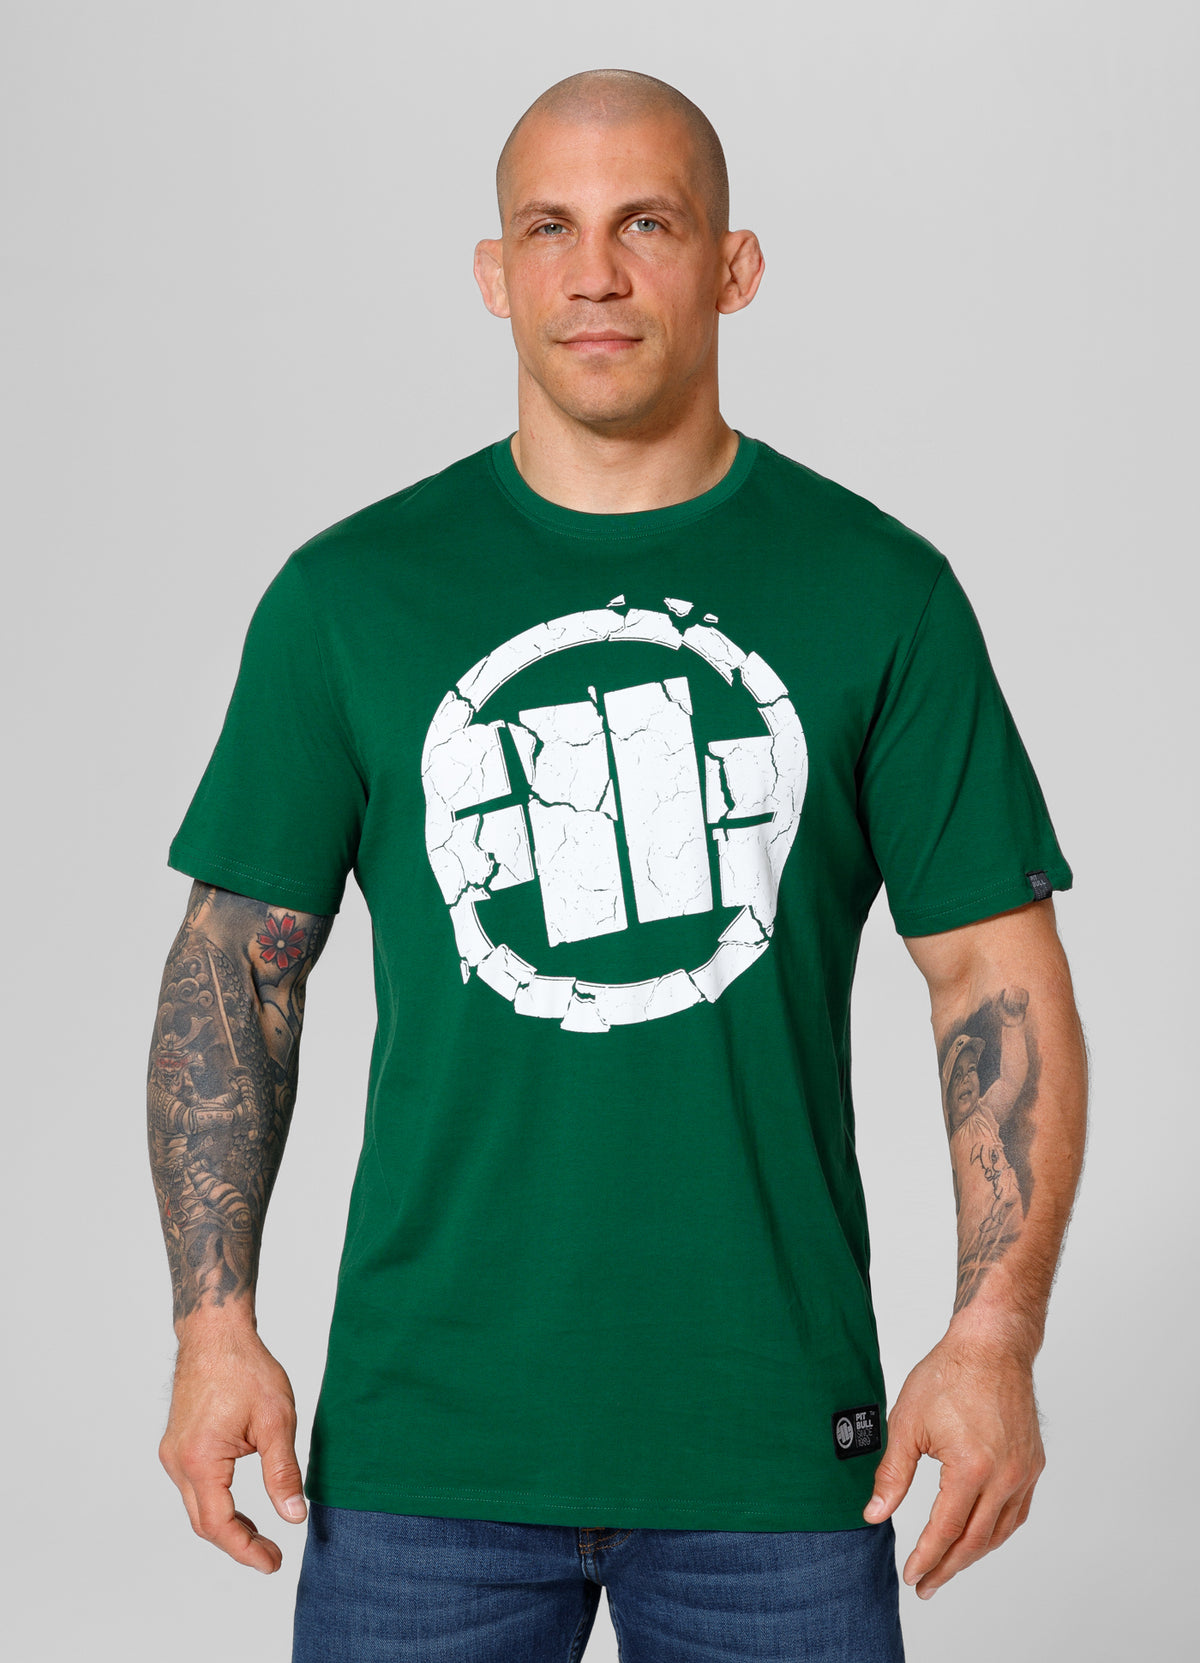 SCRATCH Lightweight Green T-shirt